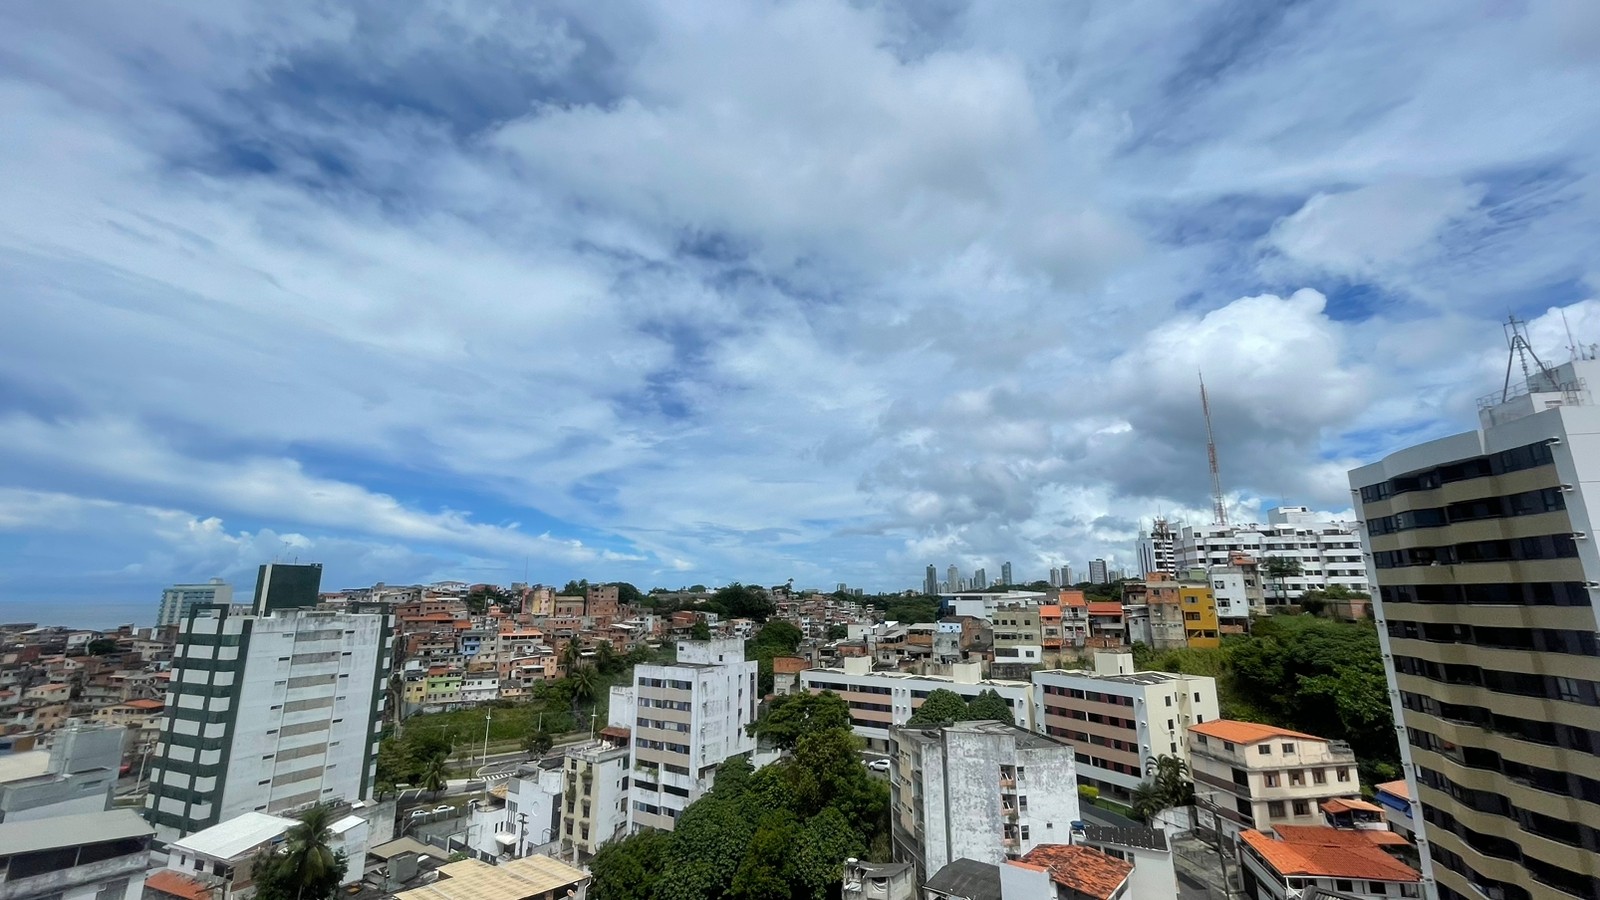 Céu encoberto e chuvas isoladas: veja previsão do tempo para Salvador e outras cidades da Bahia neste final de semana